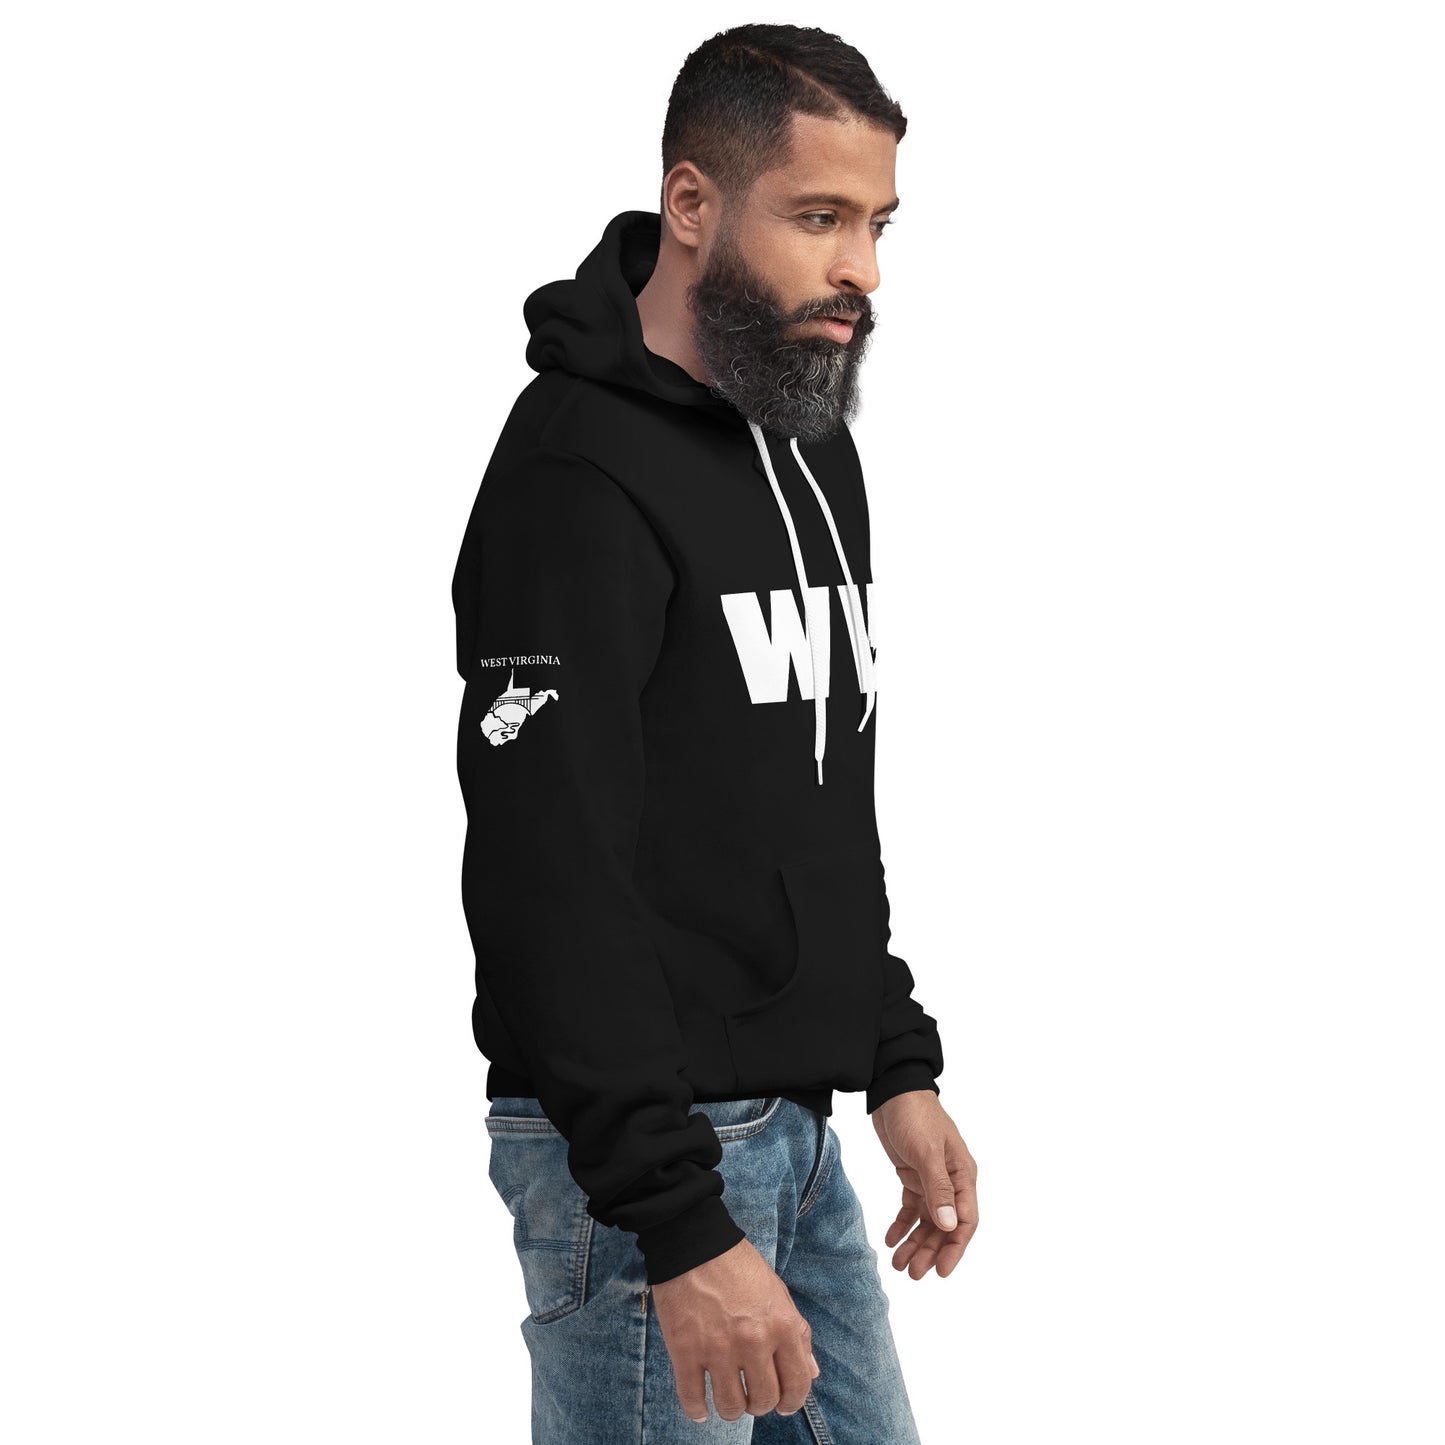 Unisex hoodie - WV (West Virginia)